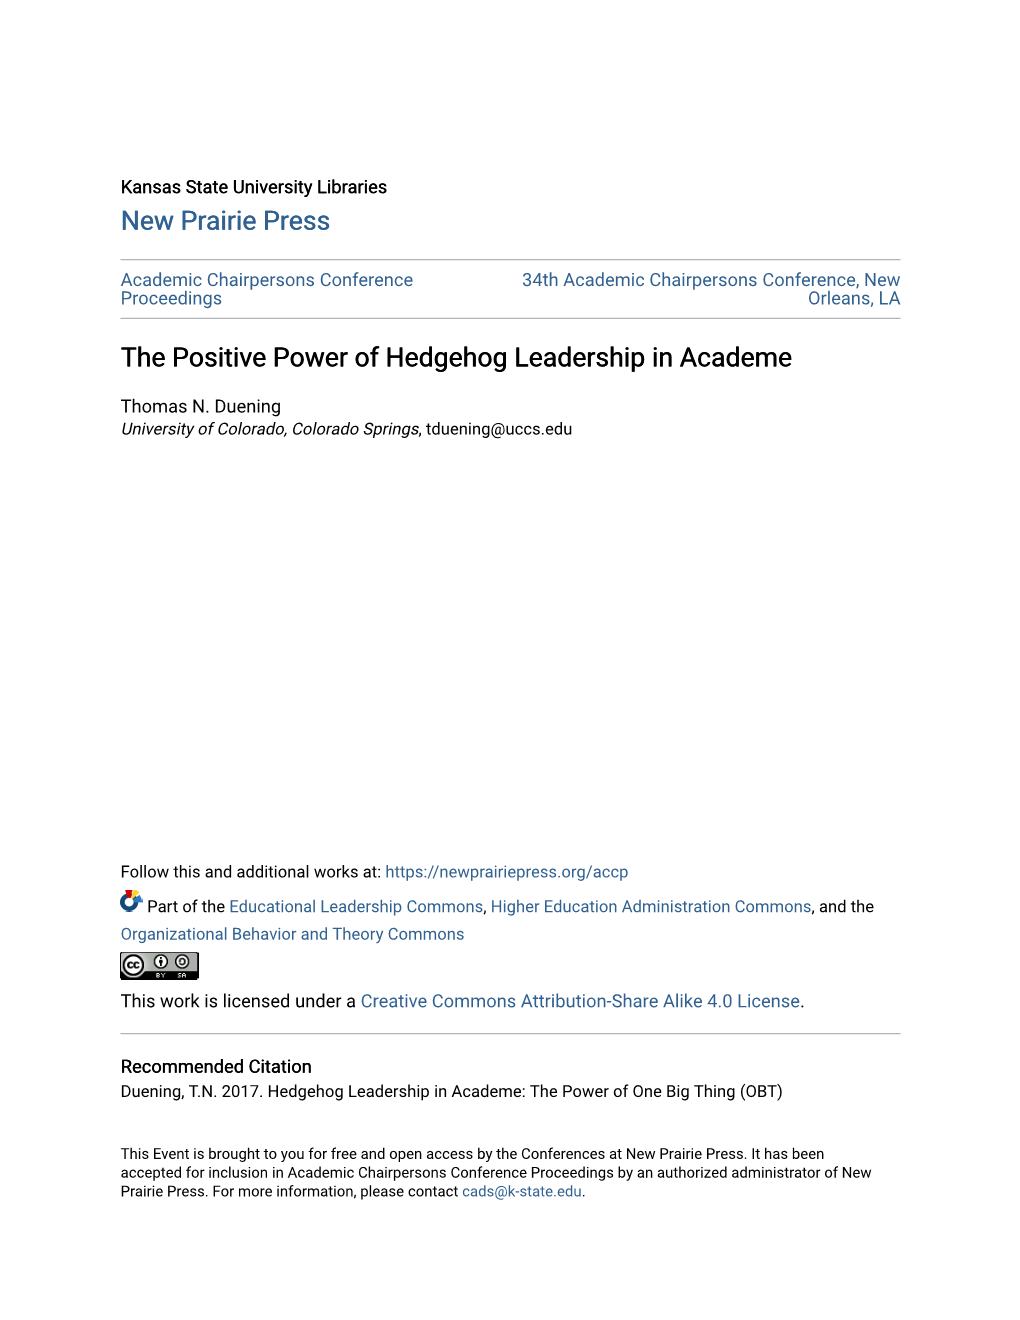 The Positive Power of Hedgehog Leadership in Academe